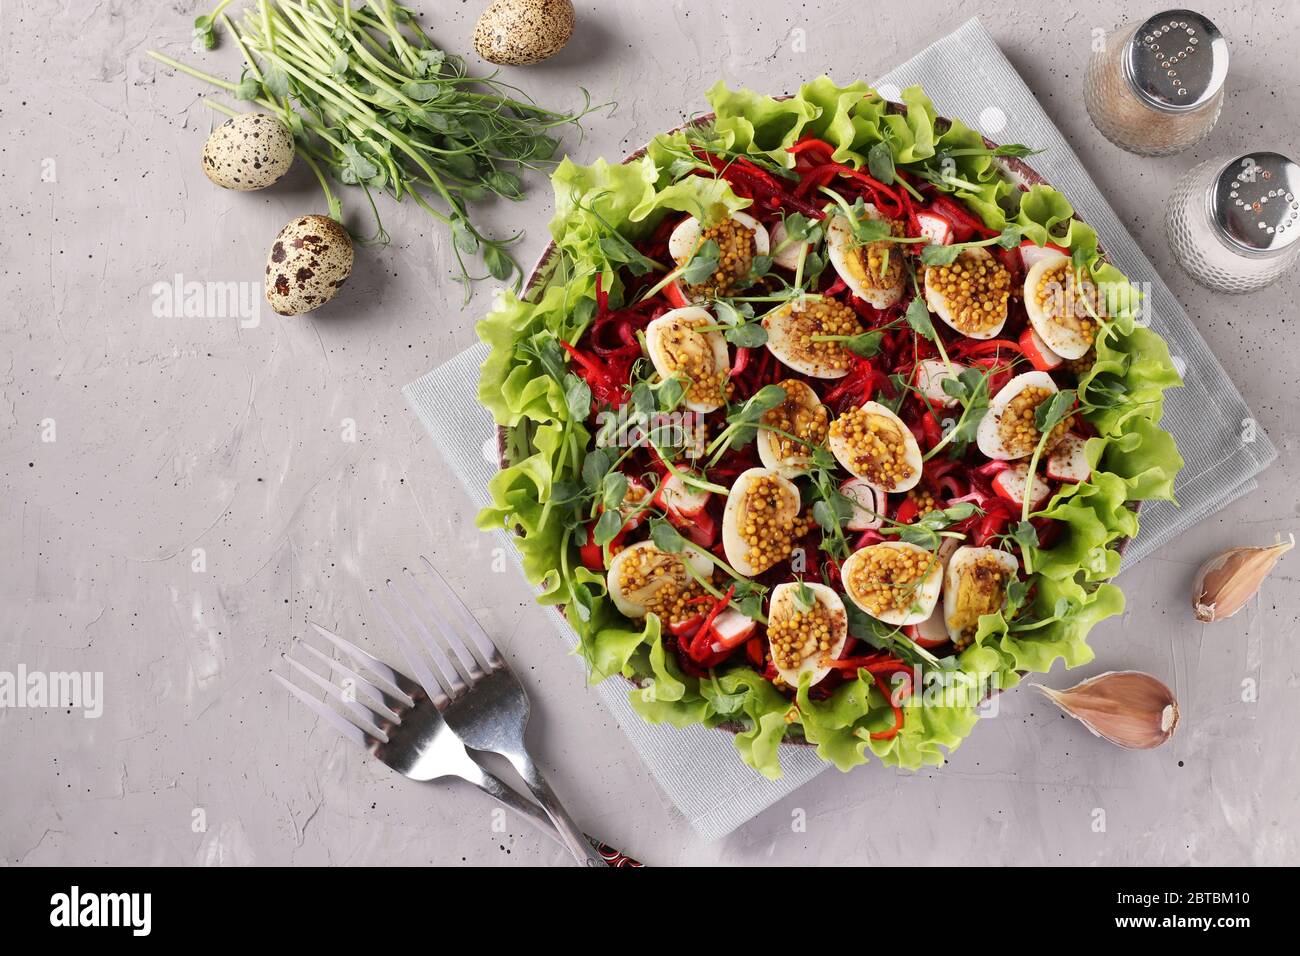 Salat aus Bio-Salatblättern, Erbsen, Mikrogrün, Karotten, Rote Bete und Wachteleier, gewürzt mit Senf und Olivenöl auf hellgrauem Hintergrund Stockfoto